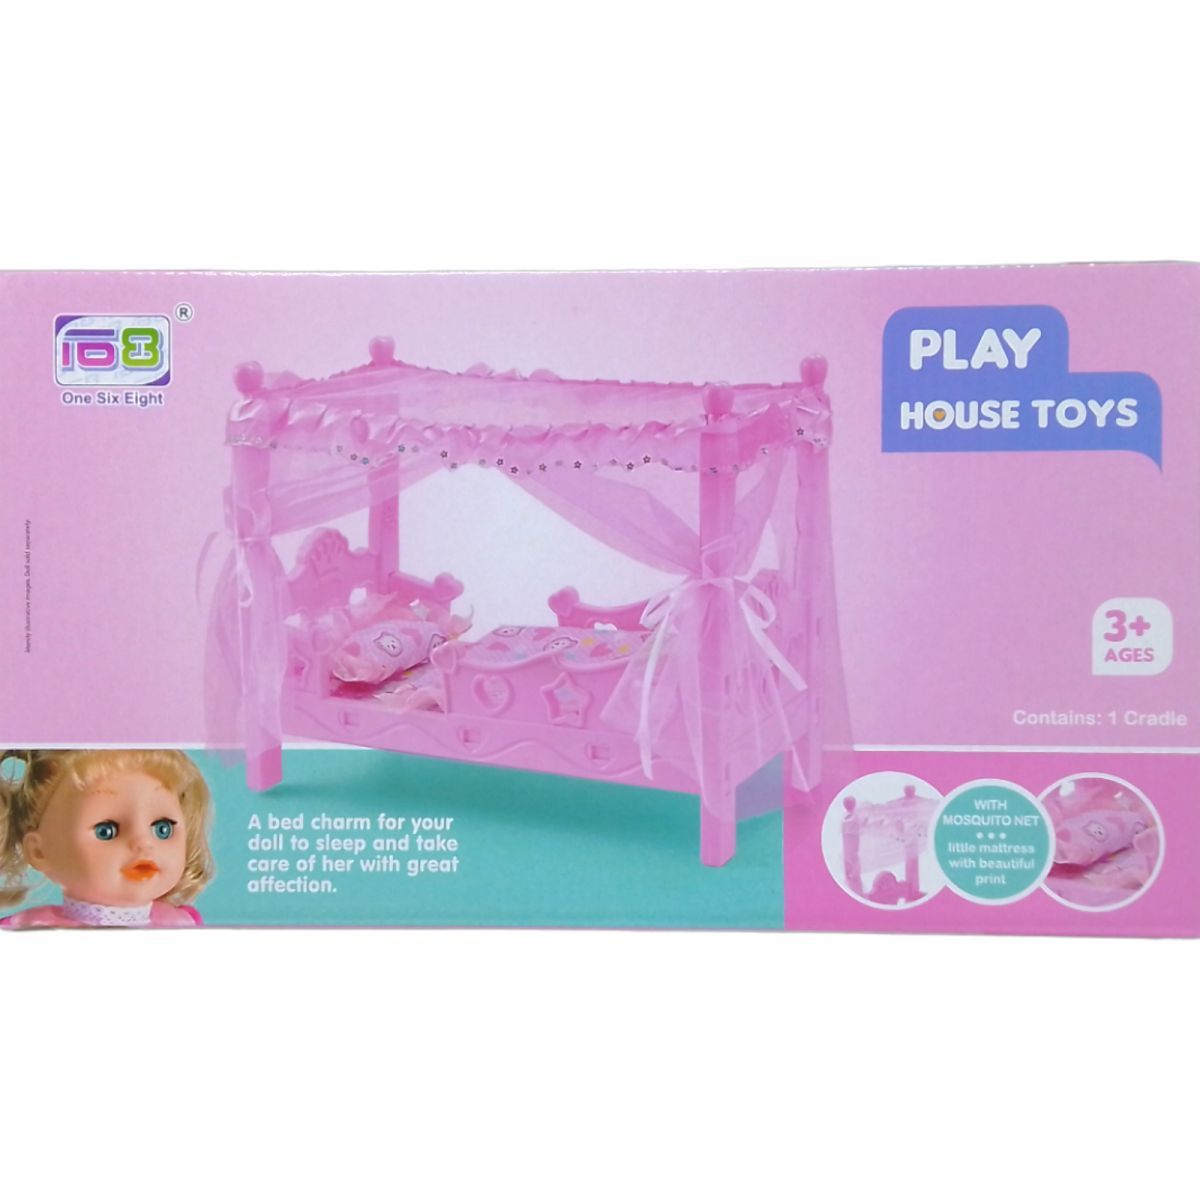 Уценка.  Кровать для куклы "Playhouse toys" дефект в пласмасе, примята упаковка